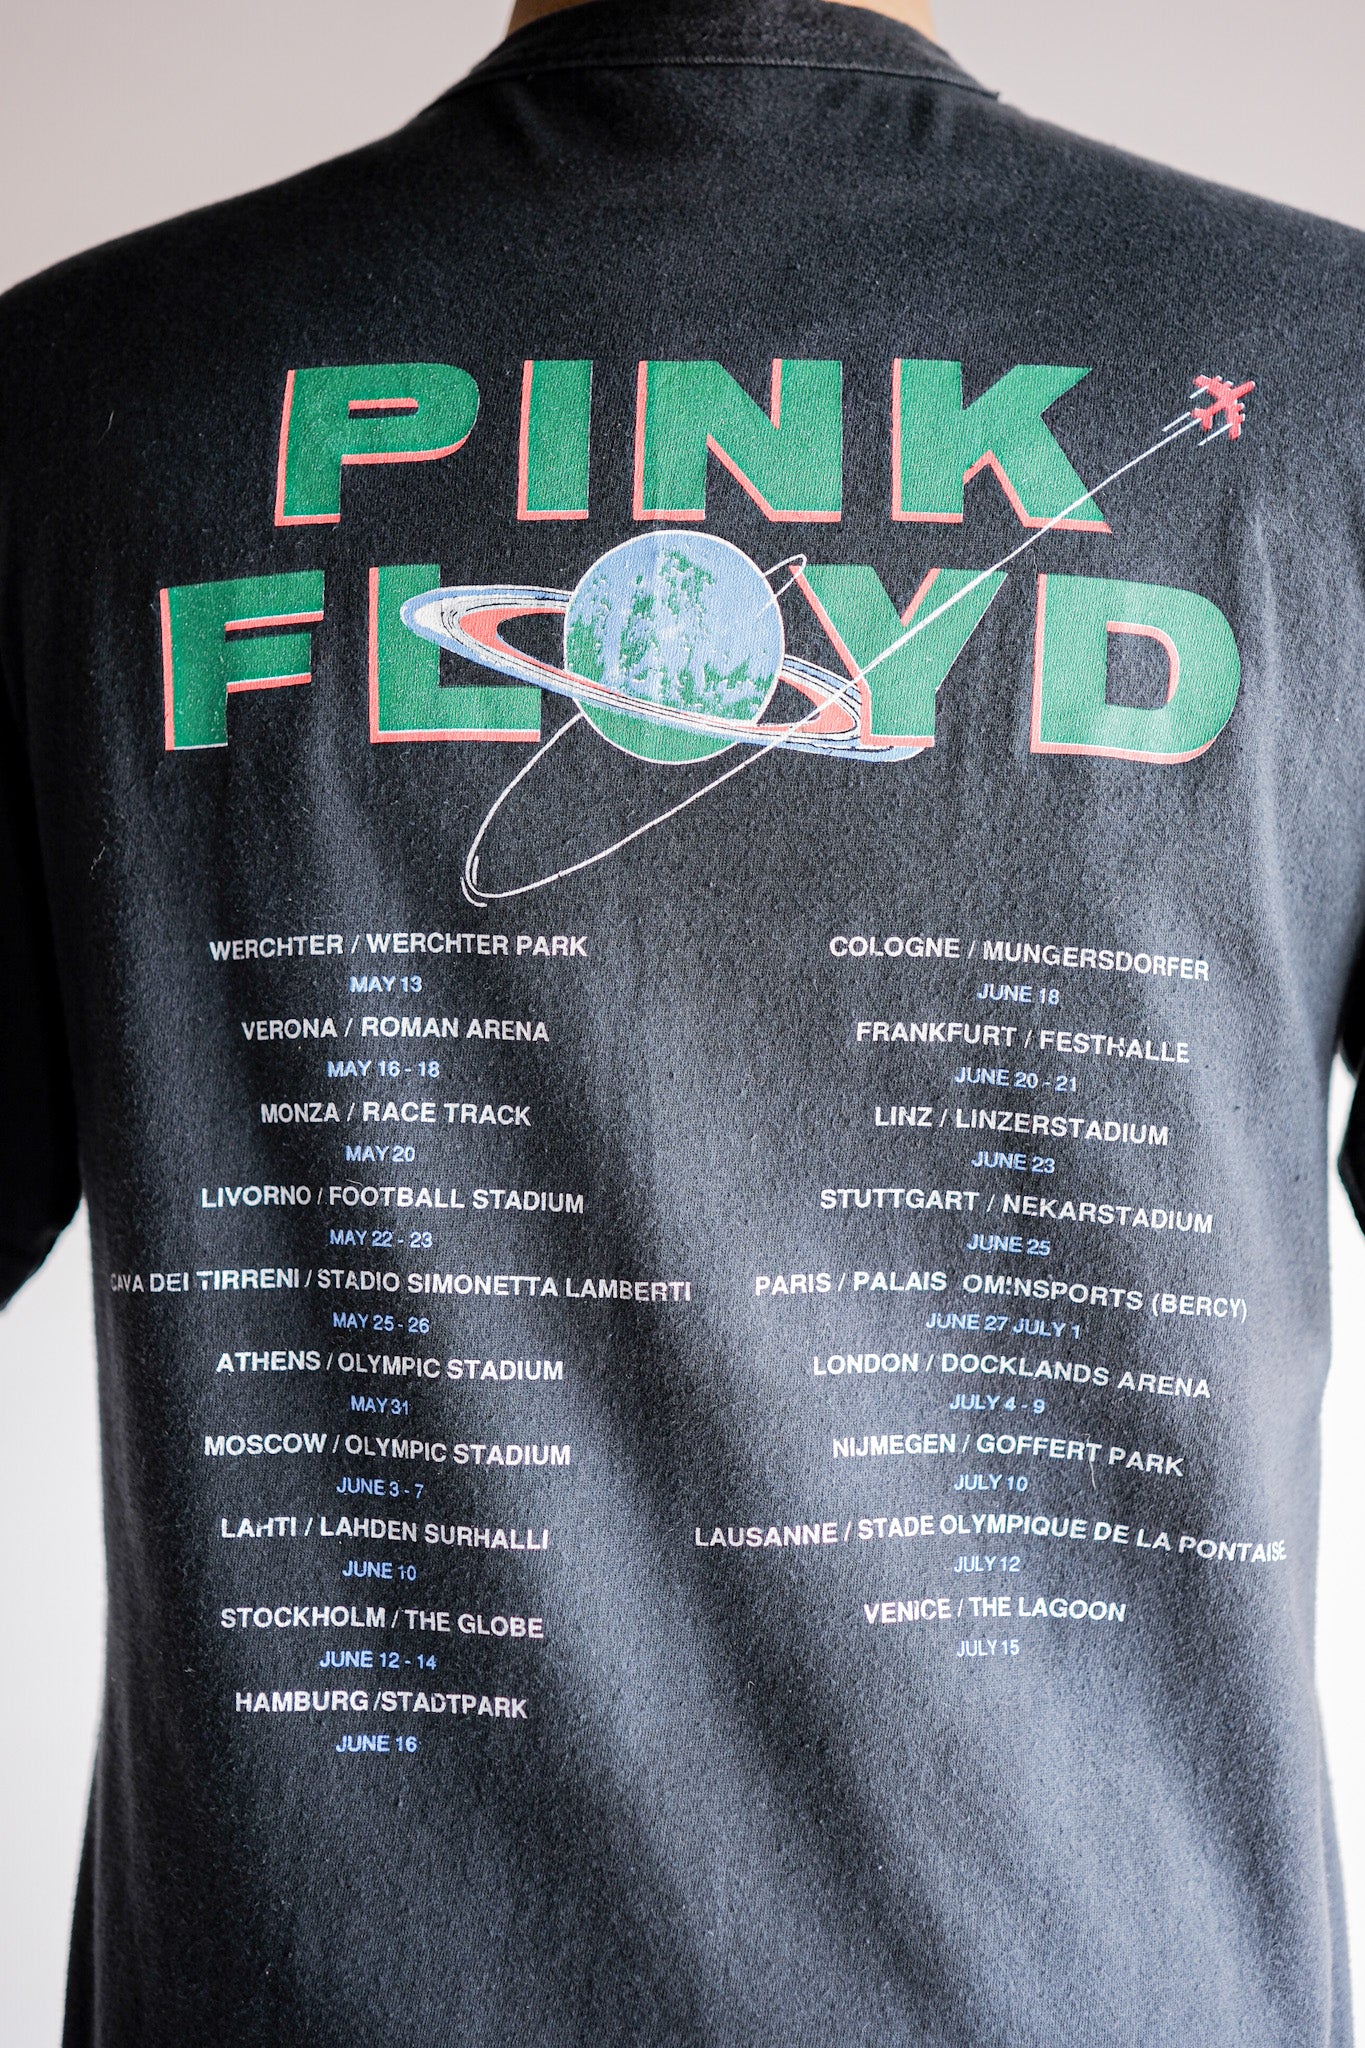 [~ 90 년대] 빈티지 음악 프린트 티셔츠 "핑크 플로이드"